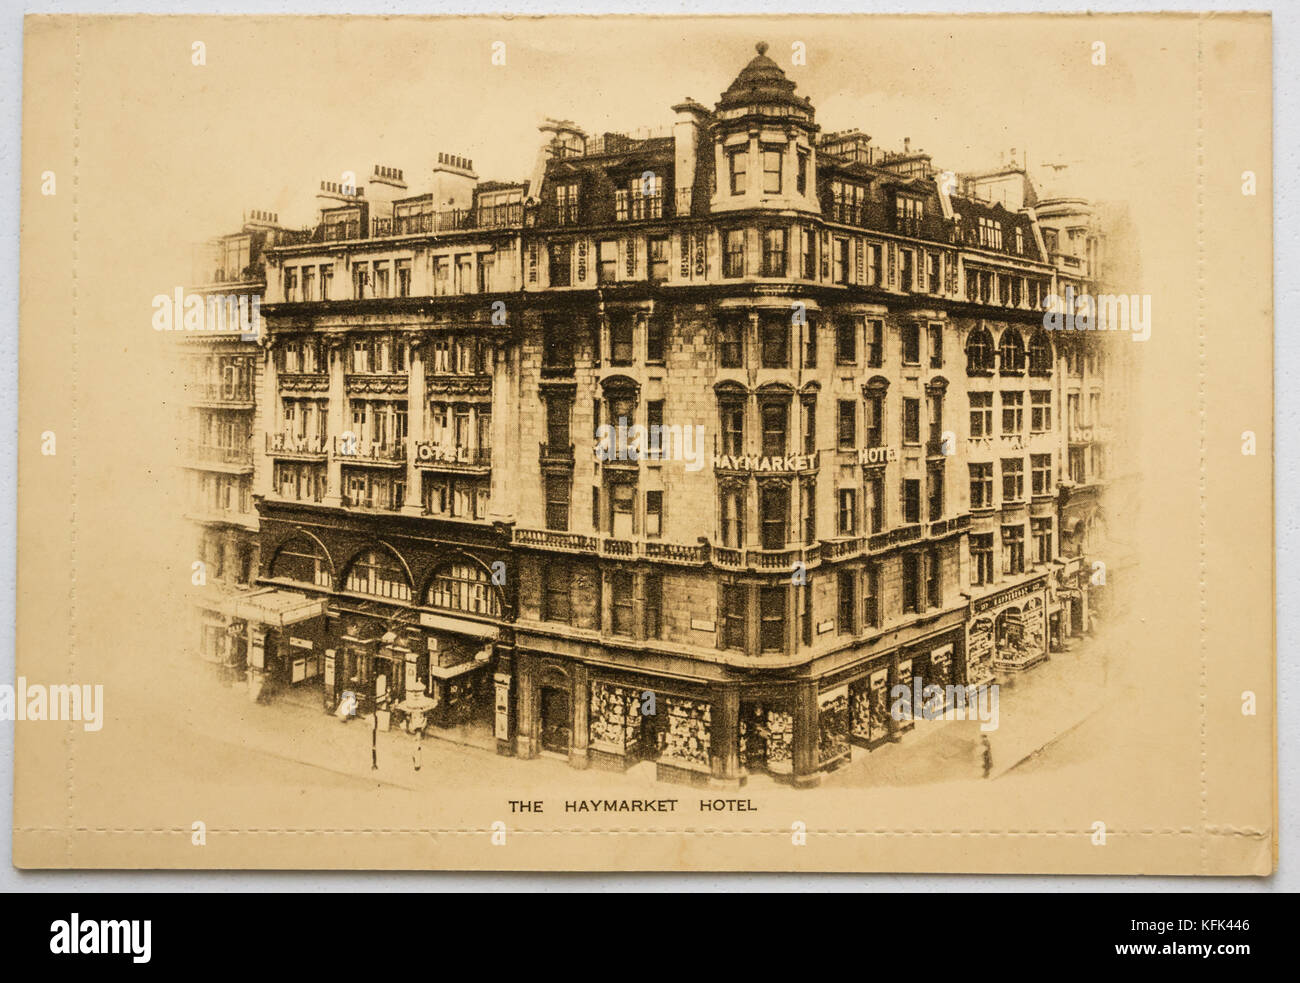 Vecchia cartolina in bianco e nero dal Haymarket Hotel, Londra, angolo di Haymarket e Piccadilly, ora demolita, con fotografia in bianco e nero dell'hotel. Foto Stock